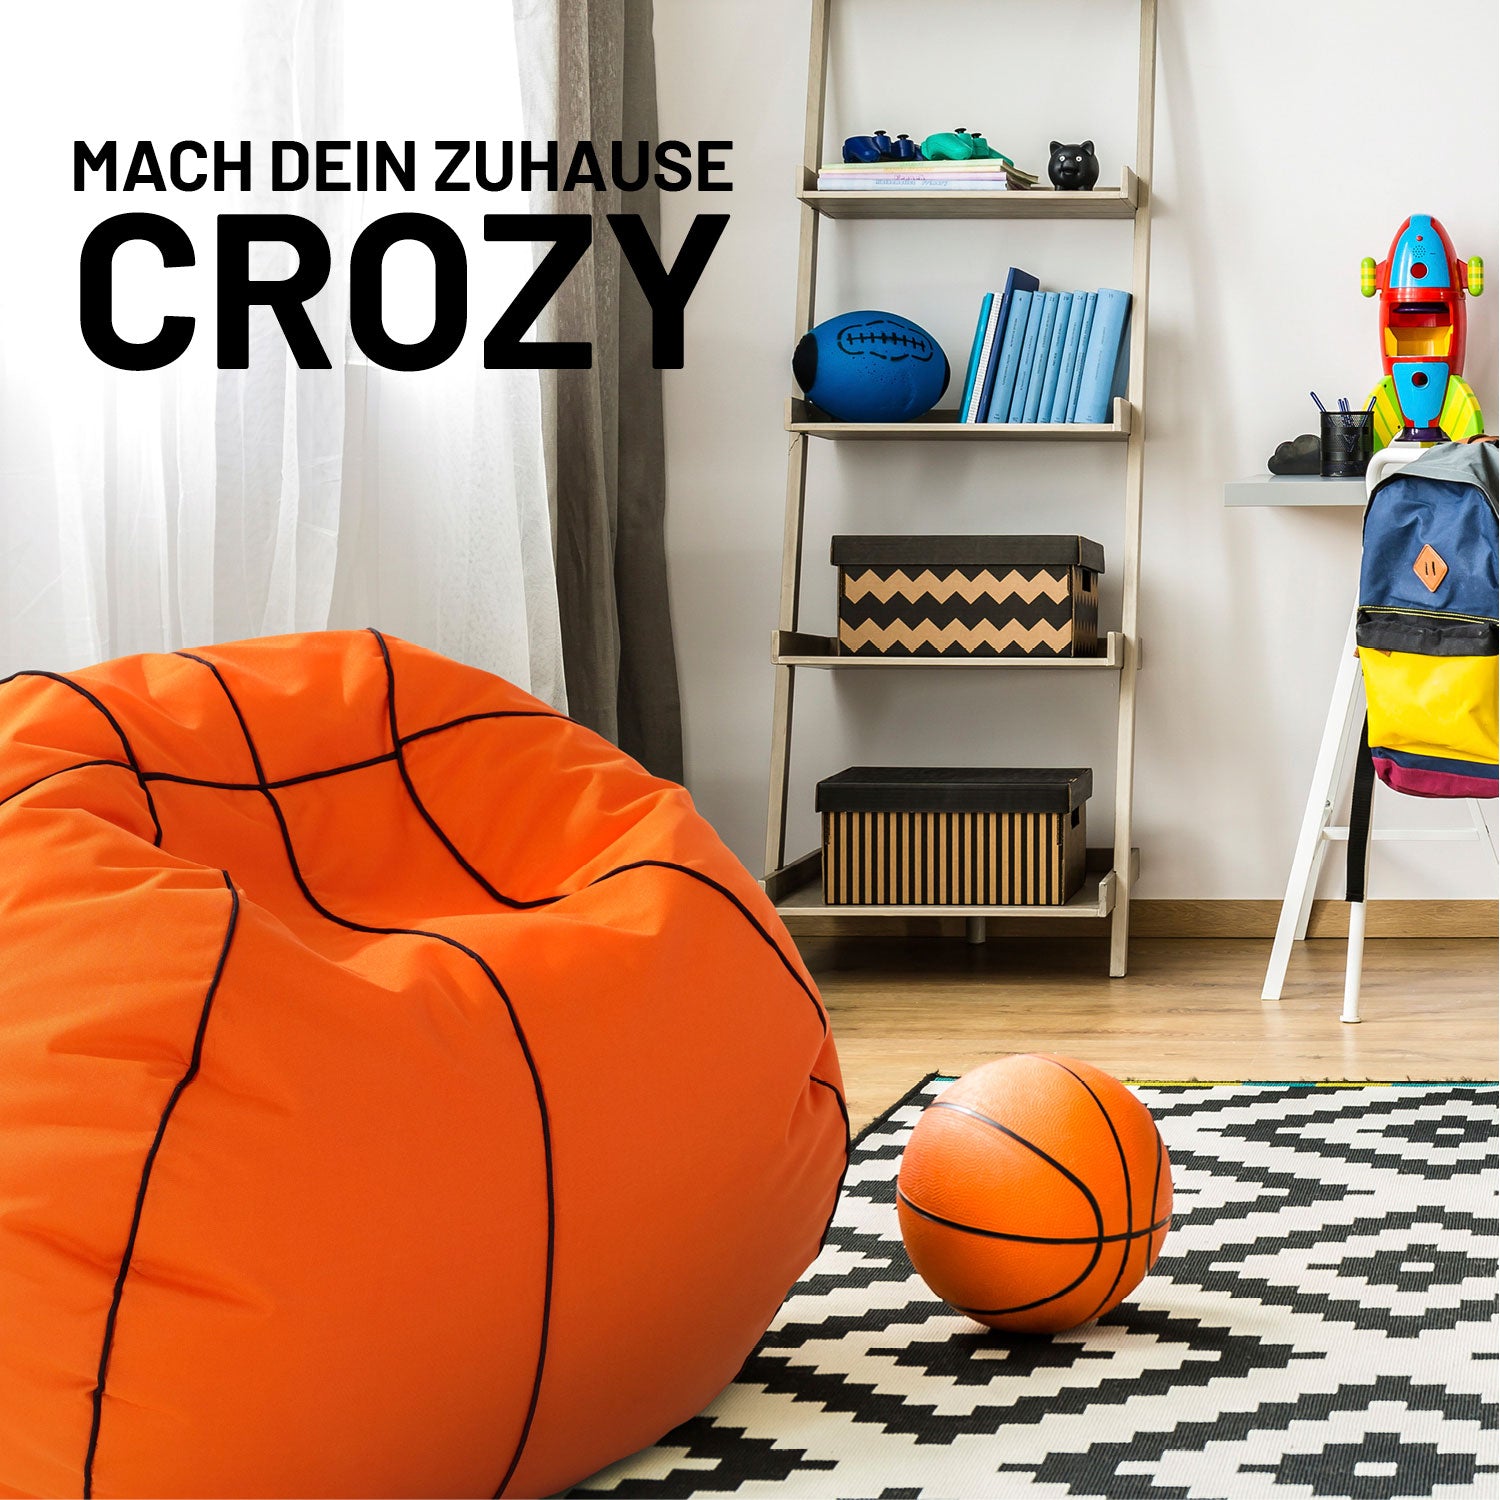 Luxury Basketball Sitzsack (170 L) - indoor & outdoor